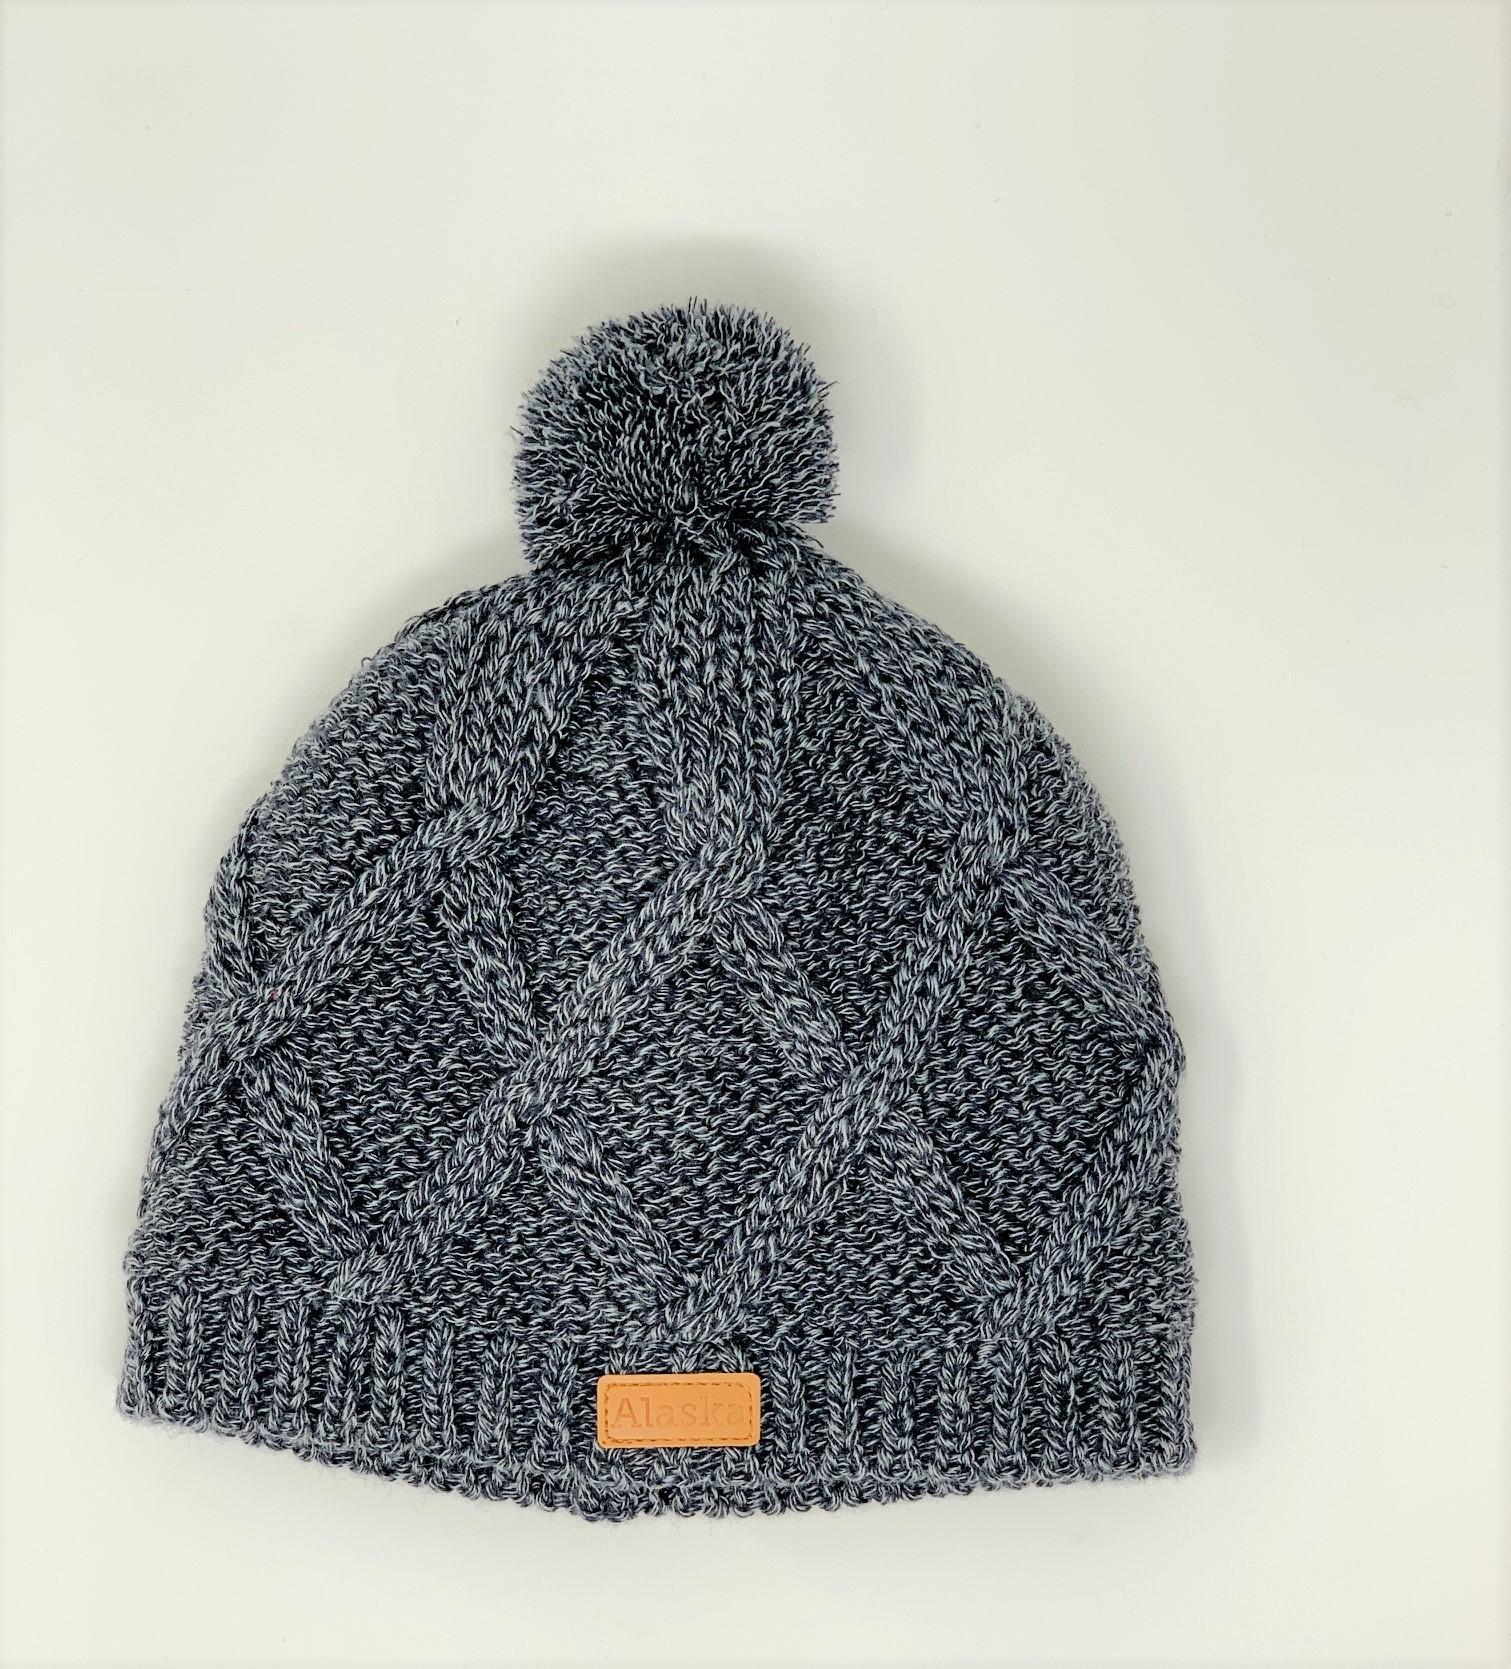  Knit Hat- Pom Pom Alaska Patch